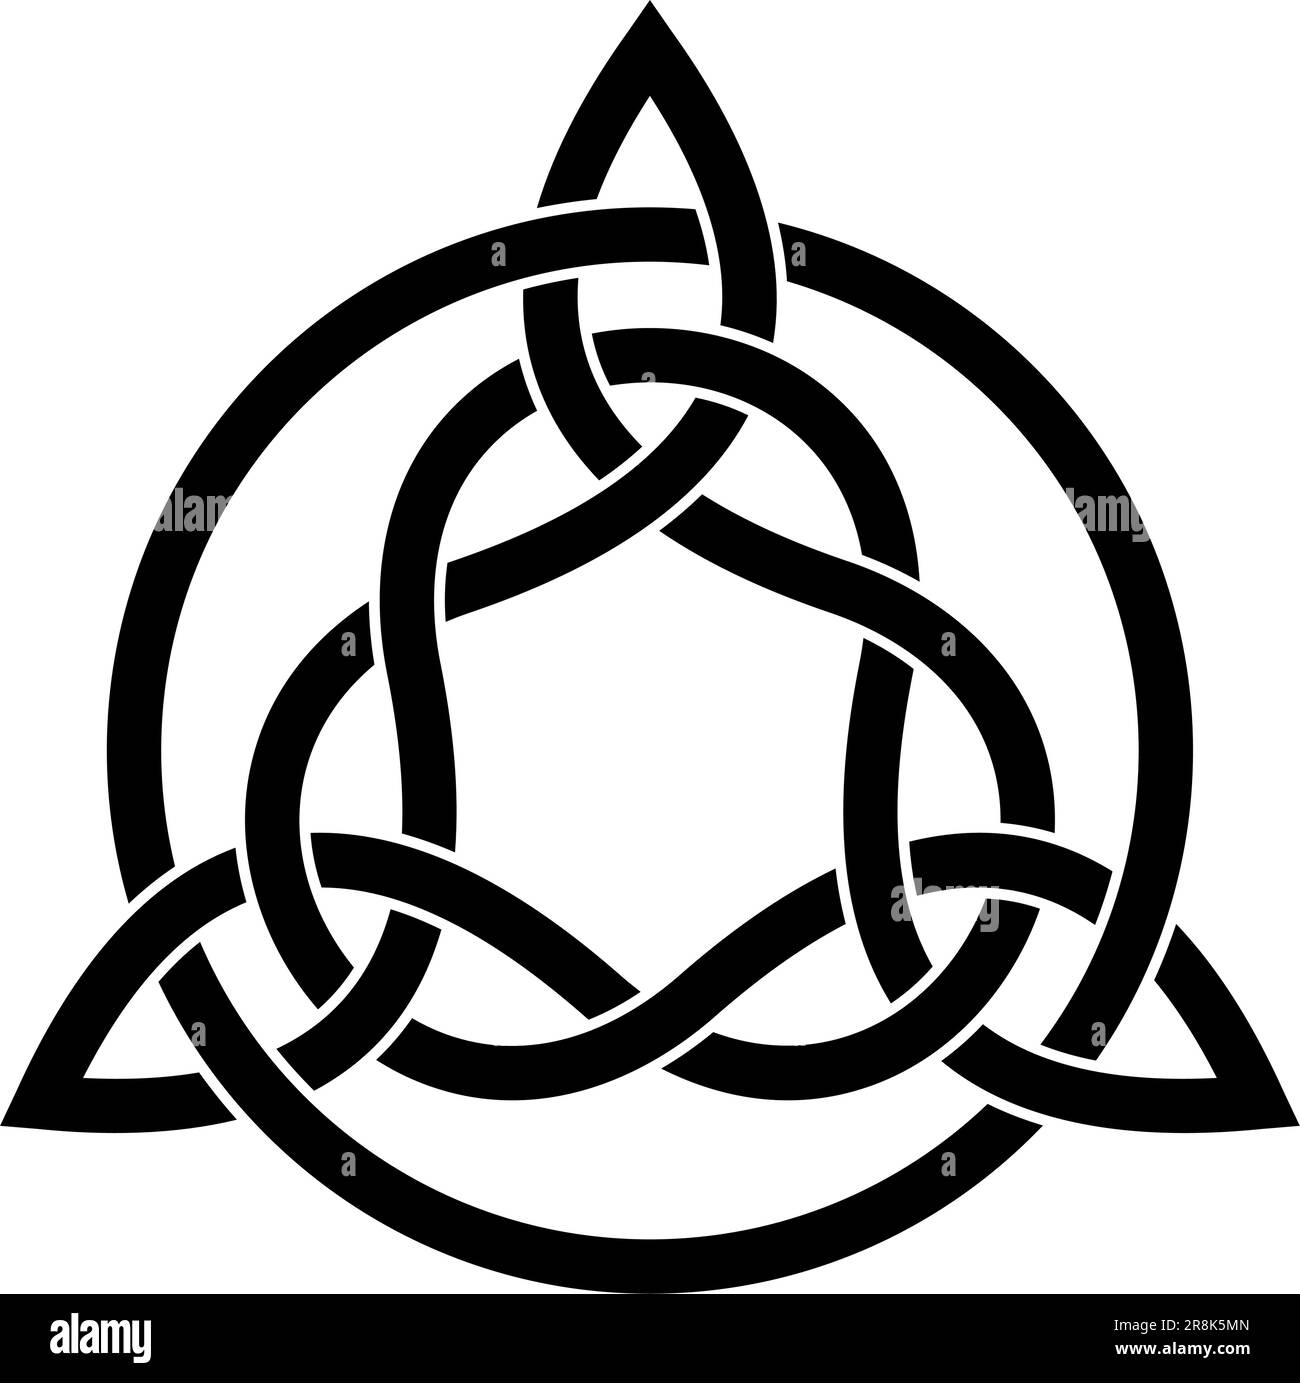 Nodo Trinity in nero. Simbolo celtico noto anche come Triquetra. La Triqueta simboleggia le tre aree del corpo, della psiche e dello spirito. Illustrazione Vettoriale